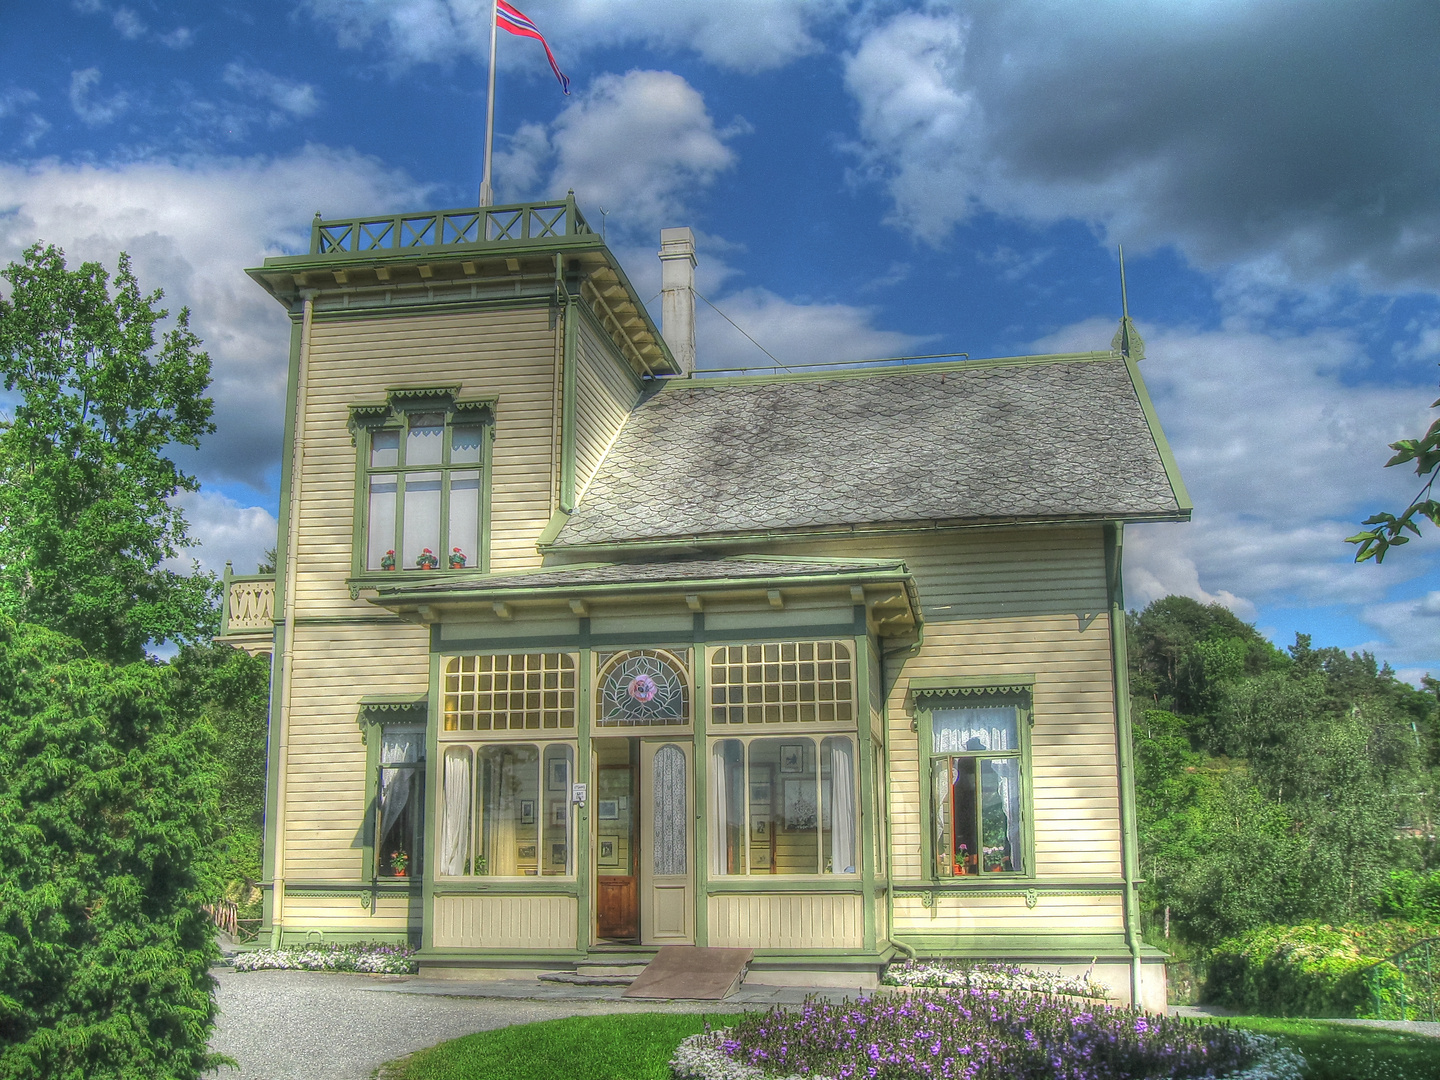 Troldhaugen - Villa von Edvard und Nina Grieg in Bergen